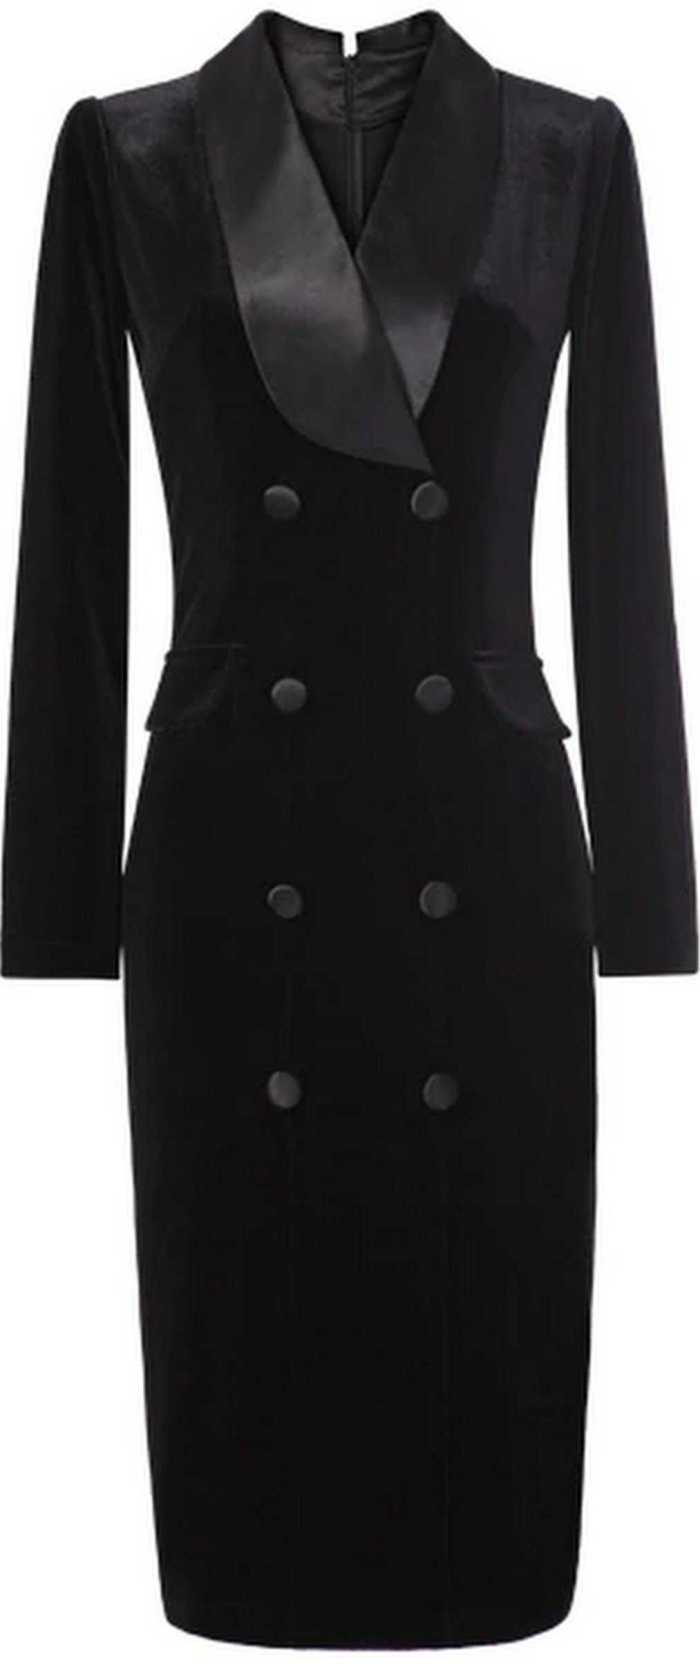 Black Double-Breasted Velvet Dress | DESIGNER INSPIRED FASHIONS